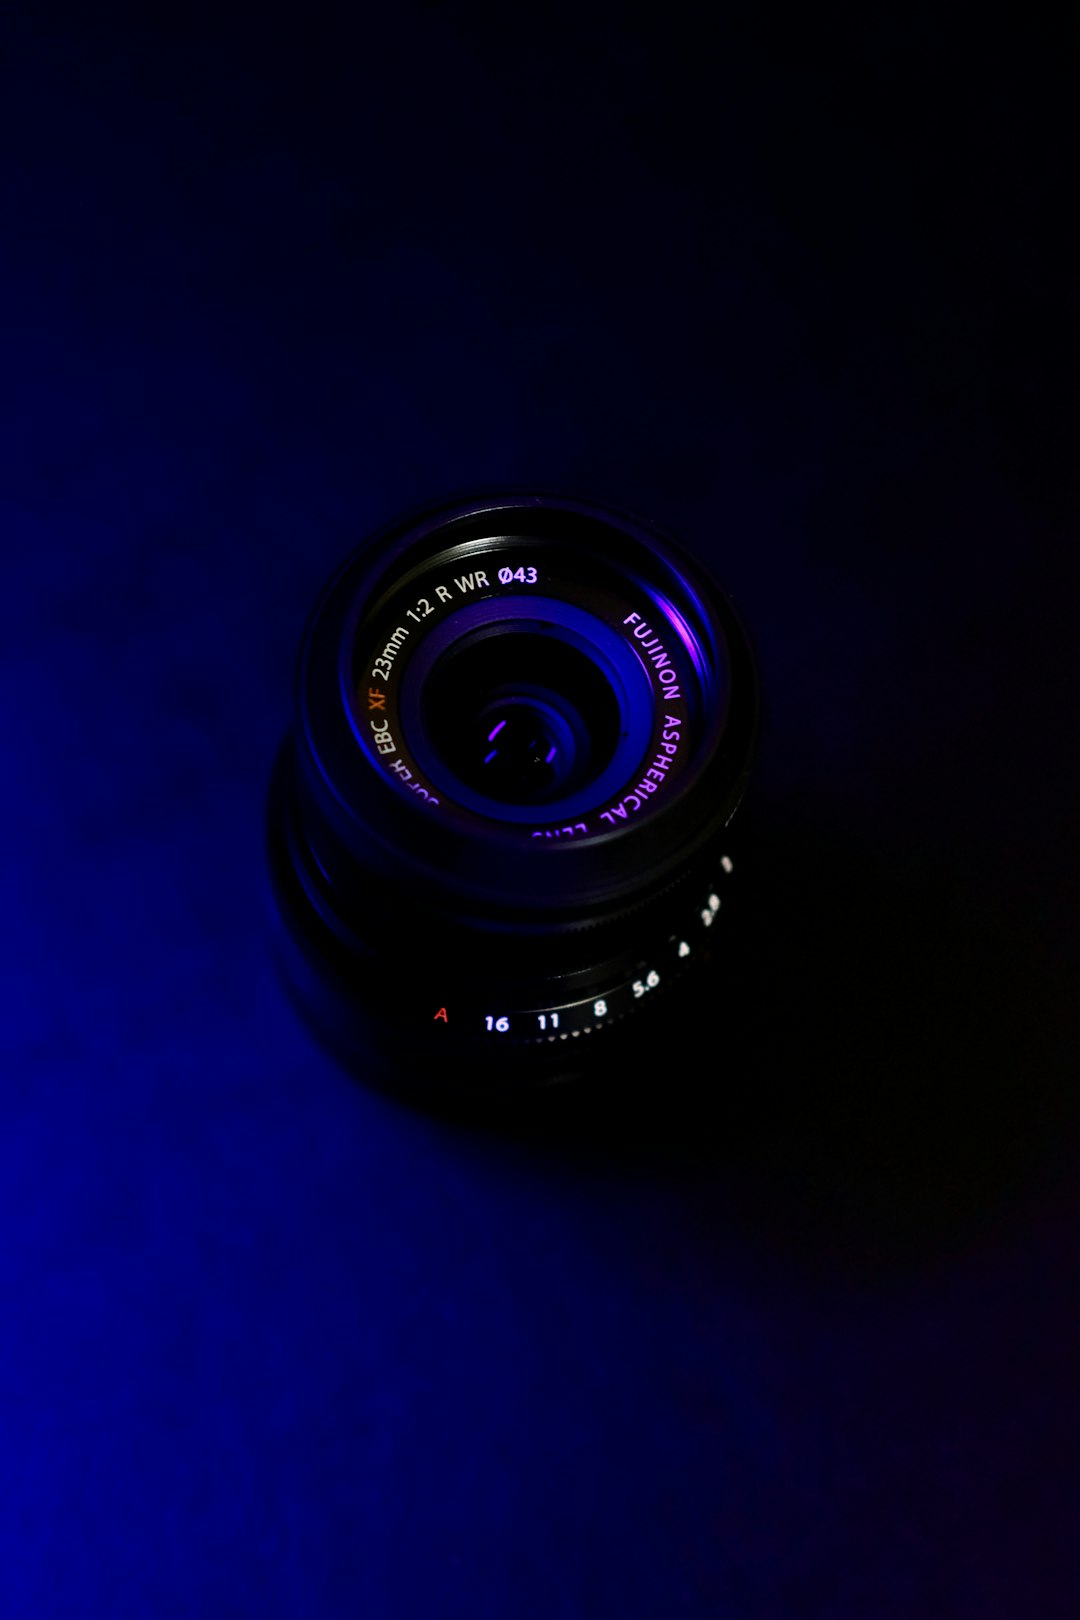 black camera lens on blue background